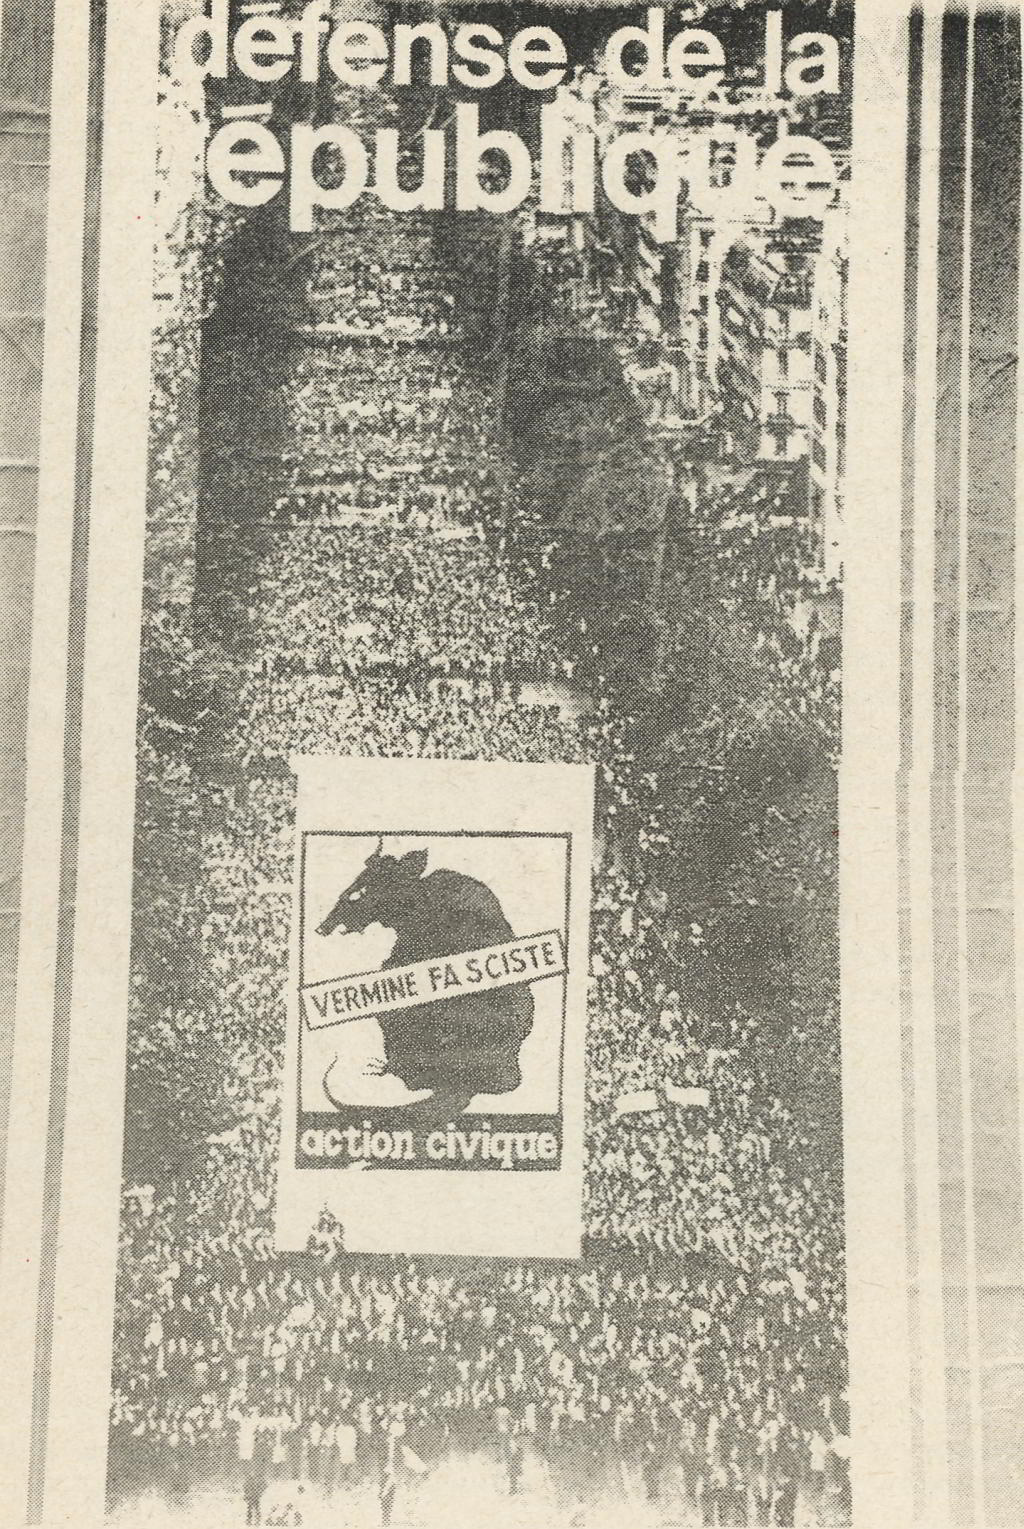 ”Forsvar republikken” lyder teksten på en af gaullisternes store valgplakater. Hertil har nogle svaret ved at sætte en plakat ovenpå med teksten: ”Borgerlig aktion, fascistisk pest”.